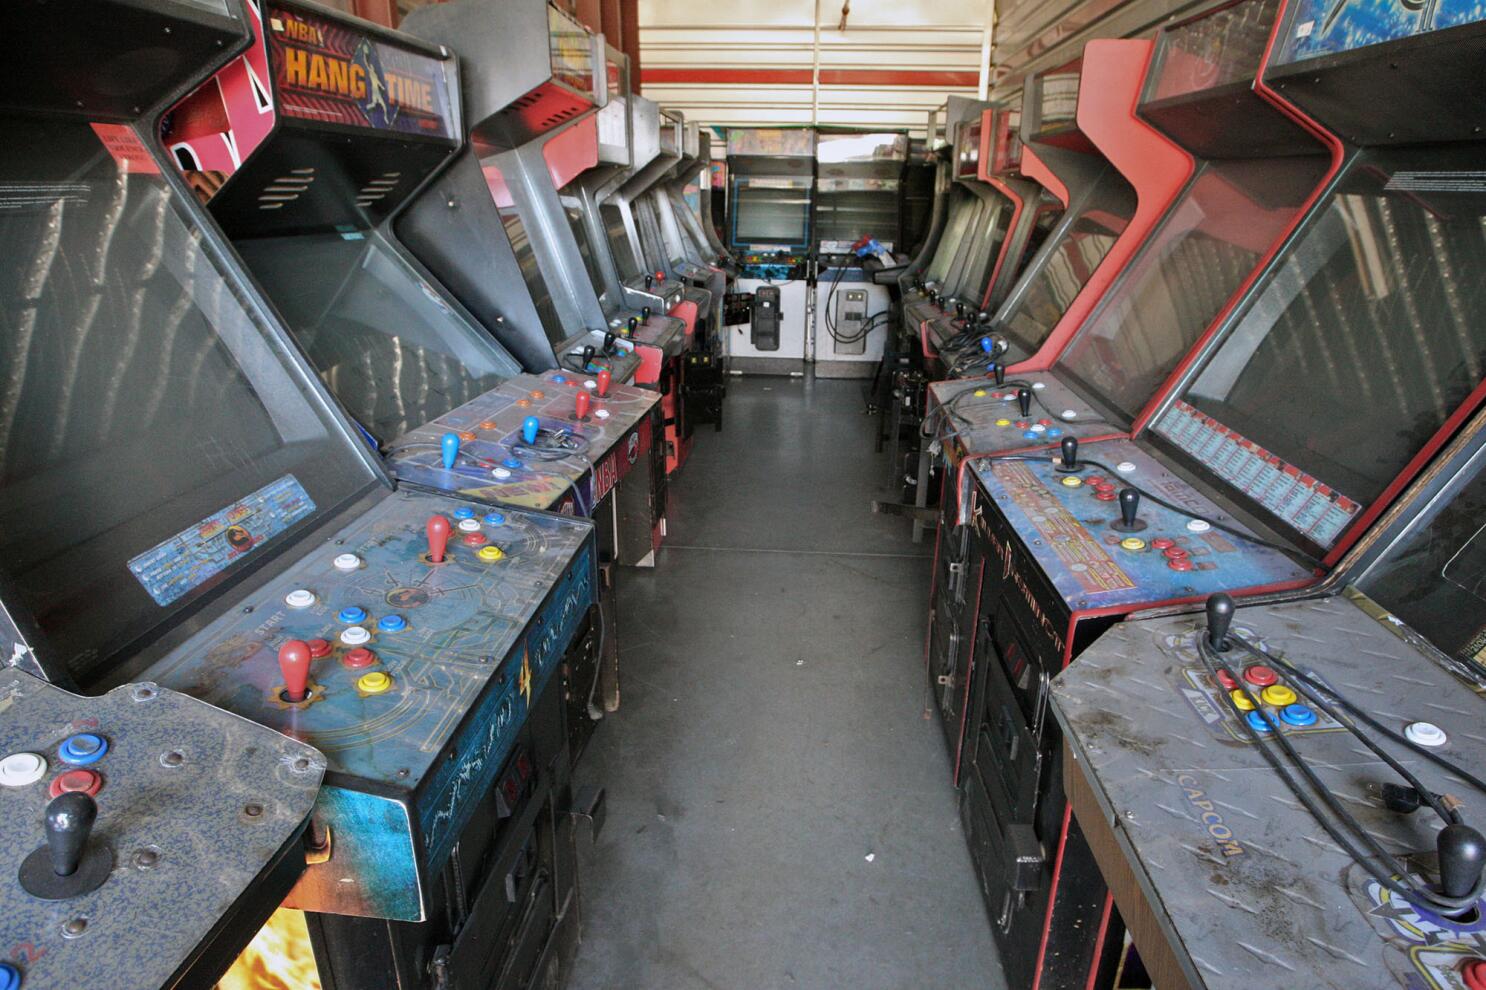 GLITCH Arcade & Games Room